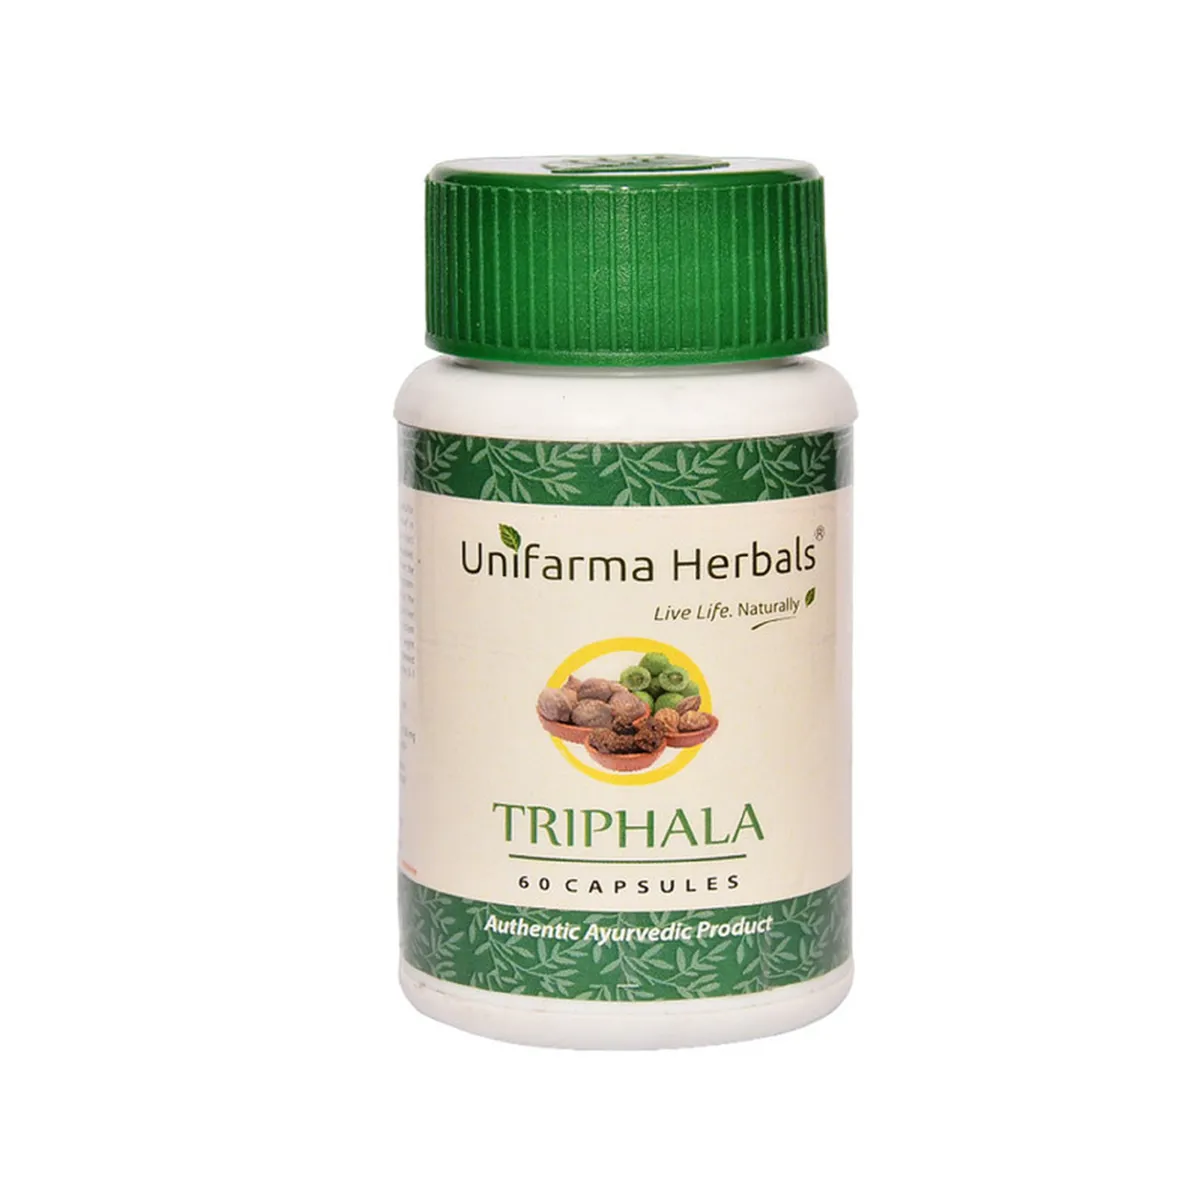 Unifarma Herbals Triphala 60caps